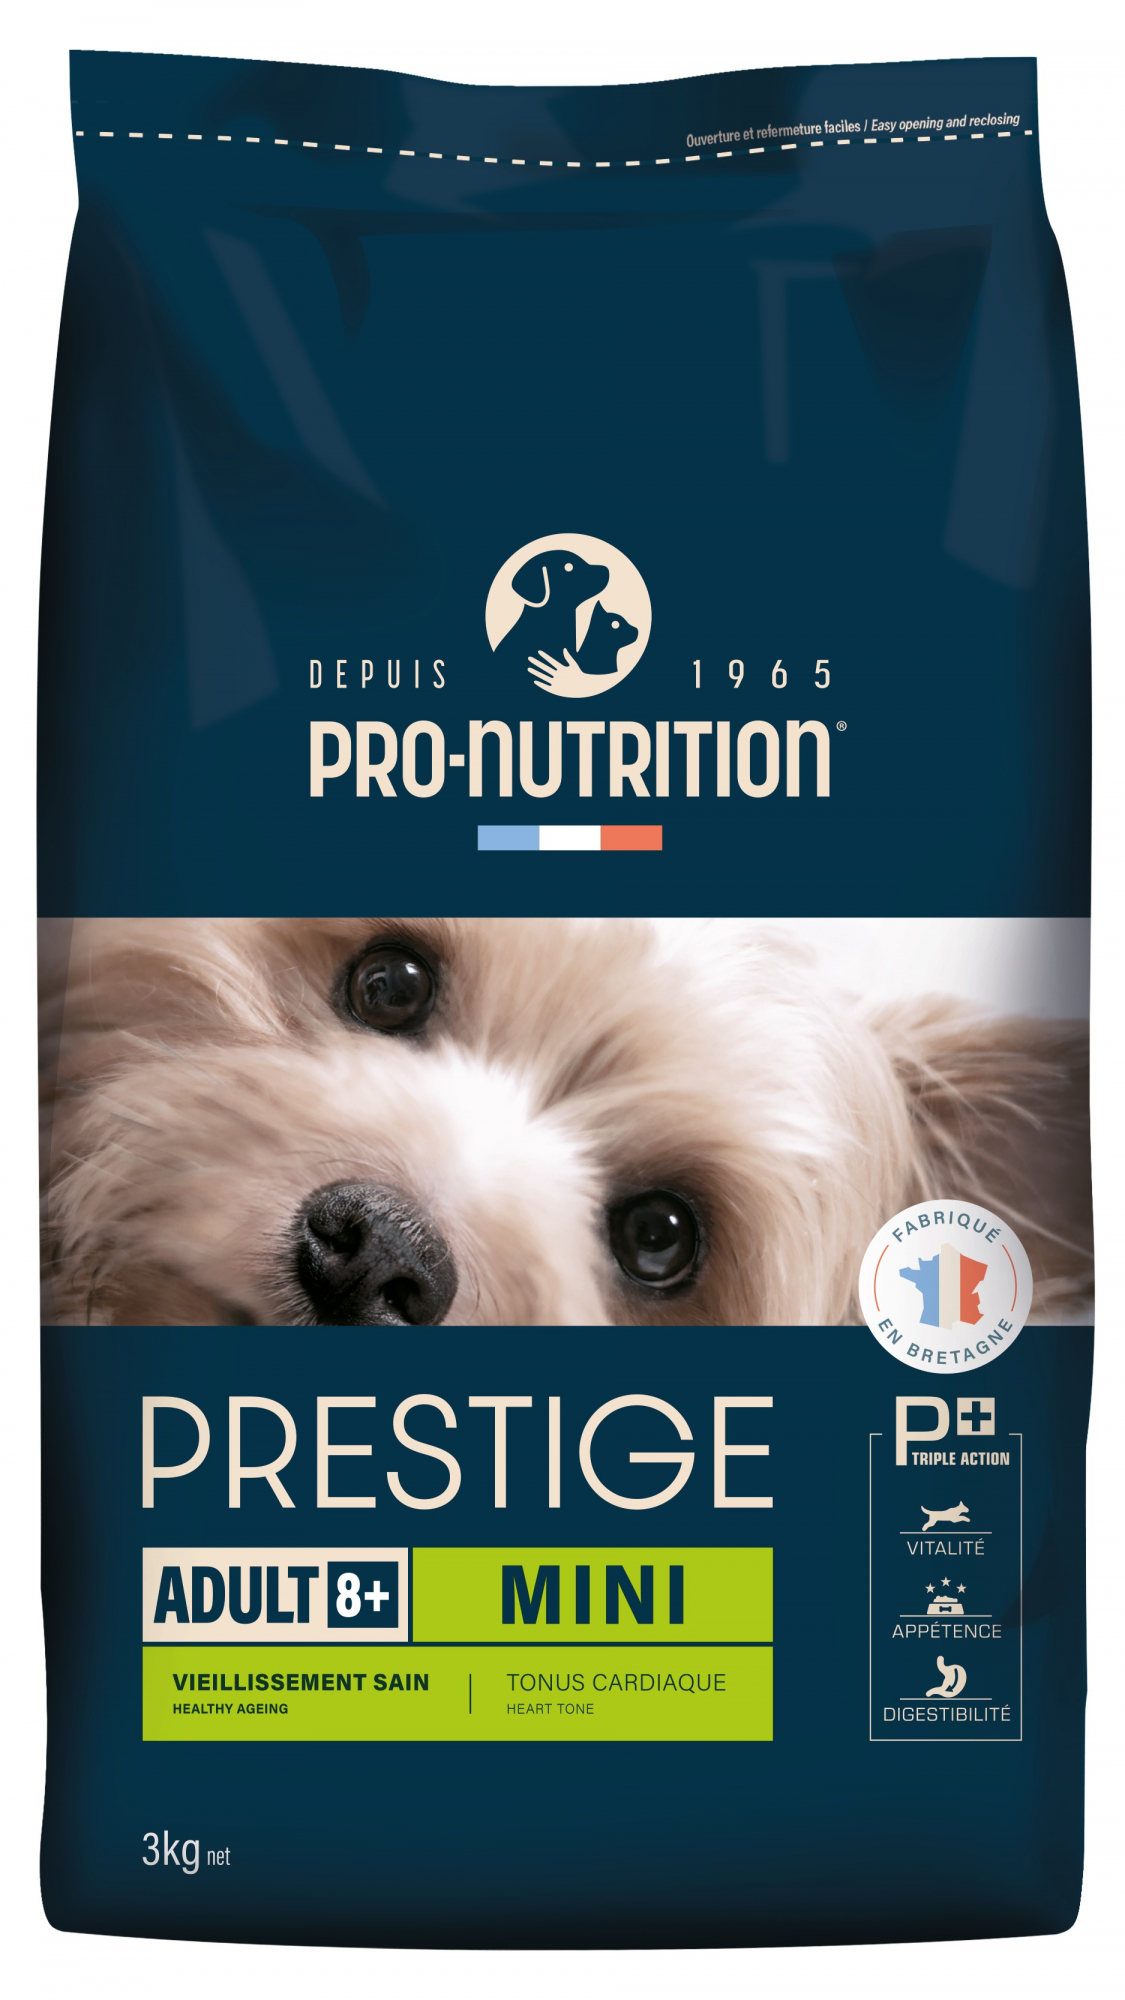 PRO-NUTRITION Flatazor PRESTIGE Adult Mini 8+ mit Geflügel für ältere kleine Hunde